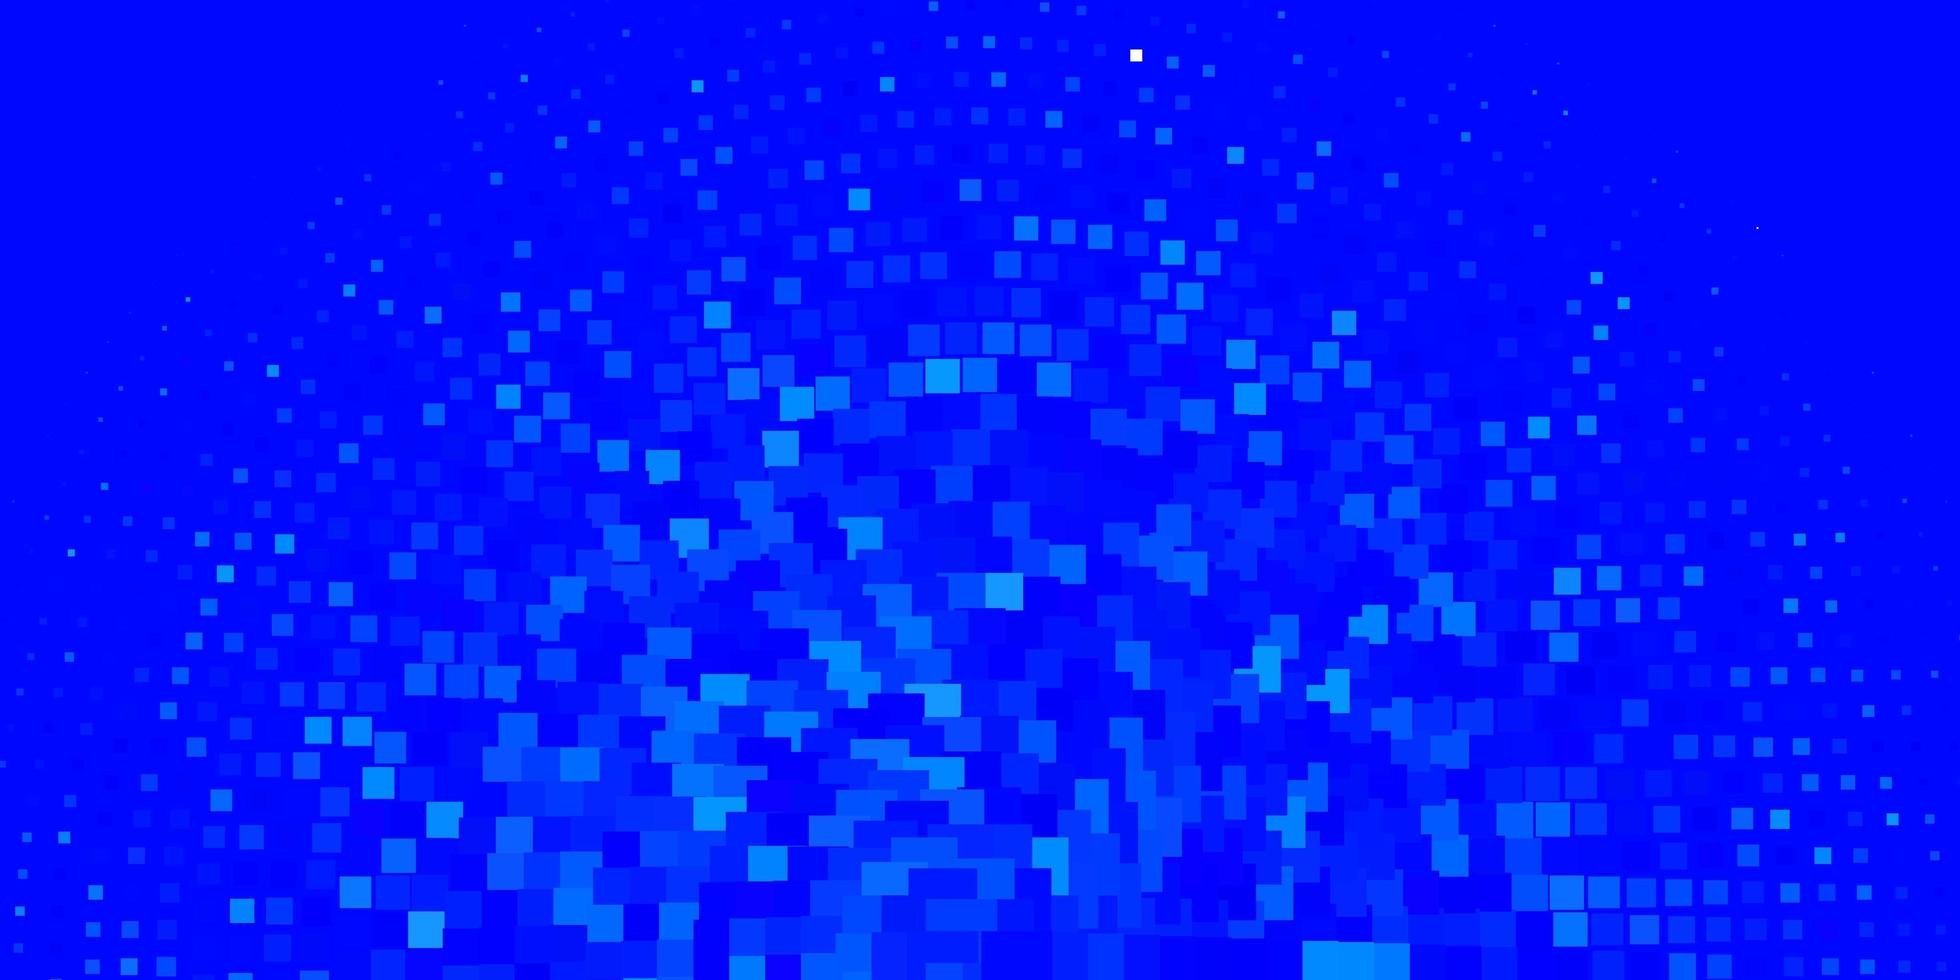 patrón de vector azul claro en estilo cuadrado. Ilustración de degradado abstracto con rectángulos de colores. plantilla para teléfonos móviles.